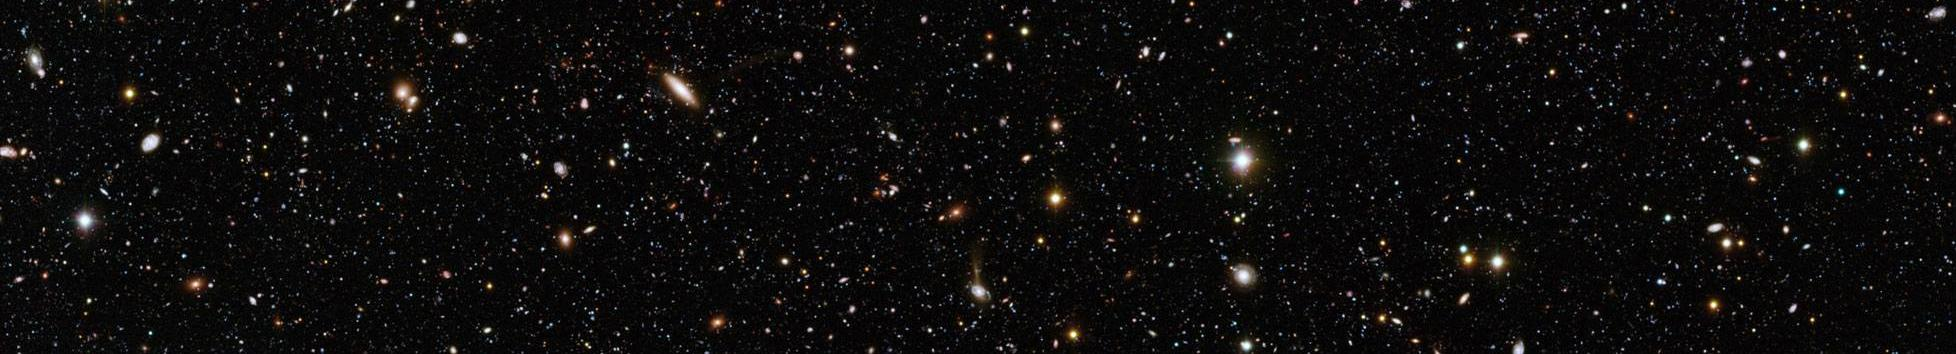 2. Universo en aceleración Las observaciones: distancias de supernovas de tipo Ia son mayores que lo esperado Conclusión: la expansión del Universo se acelera Escenario previo: el Universo se